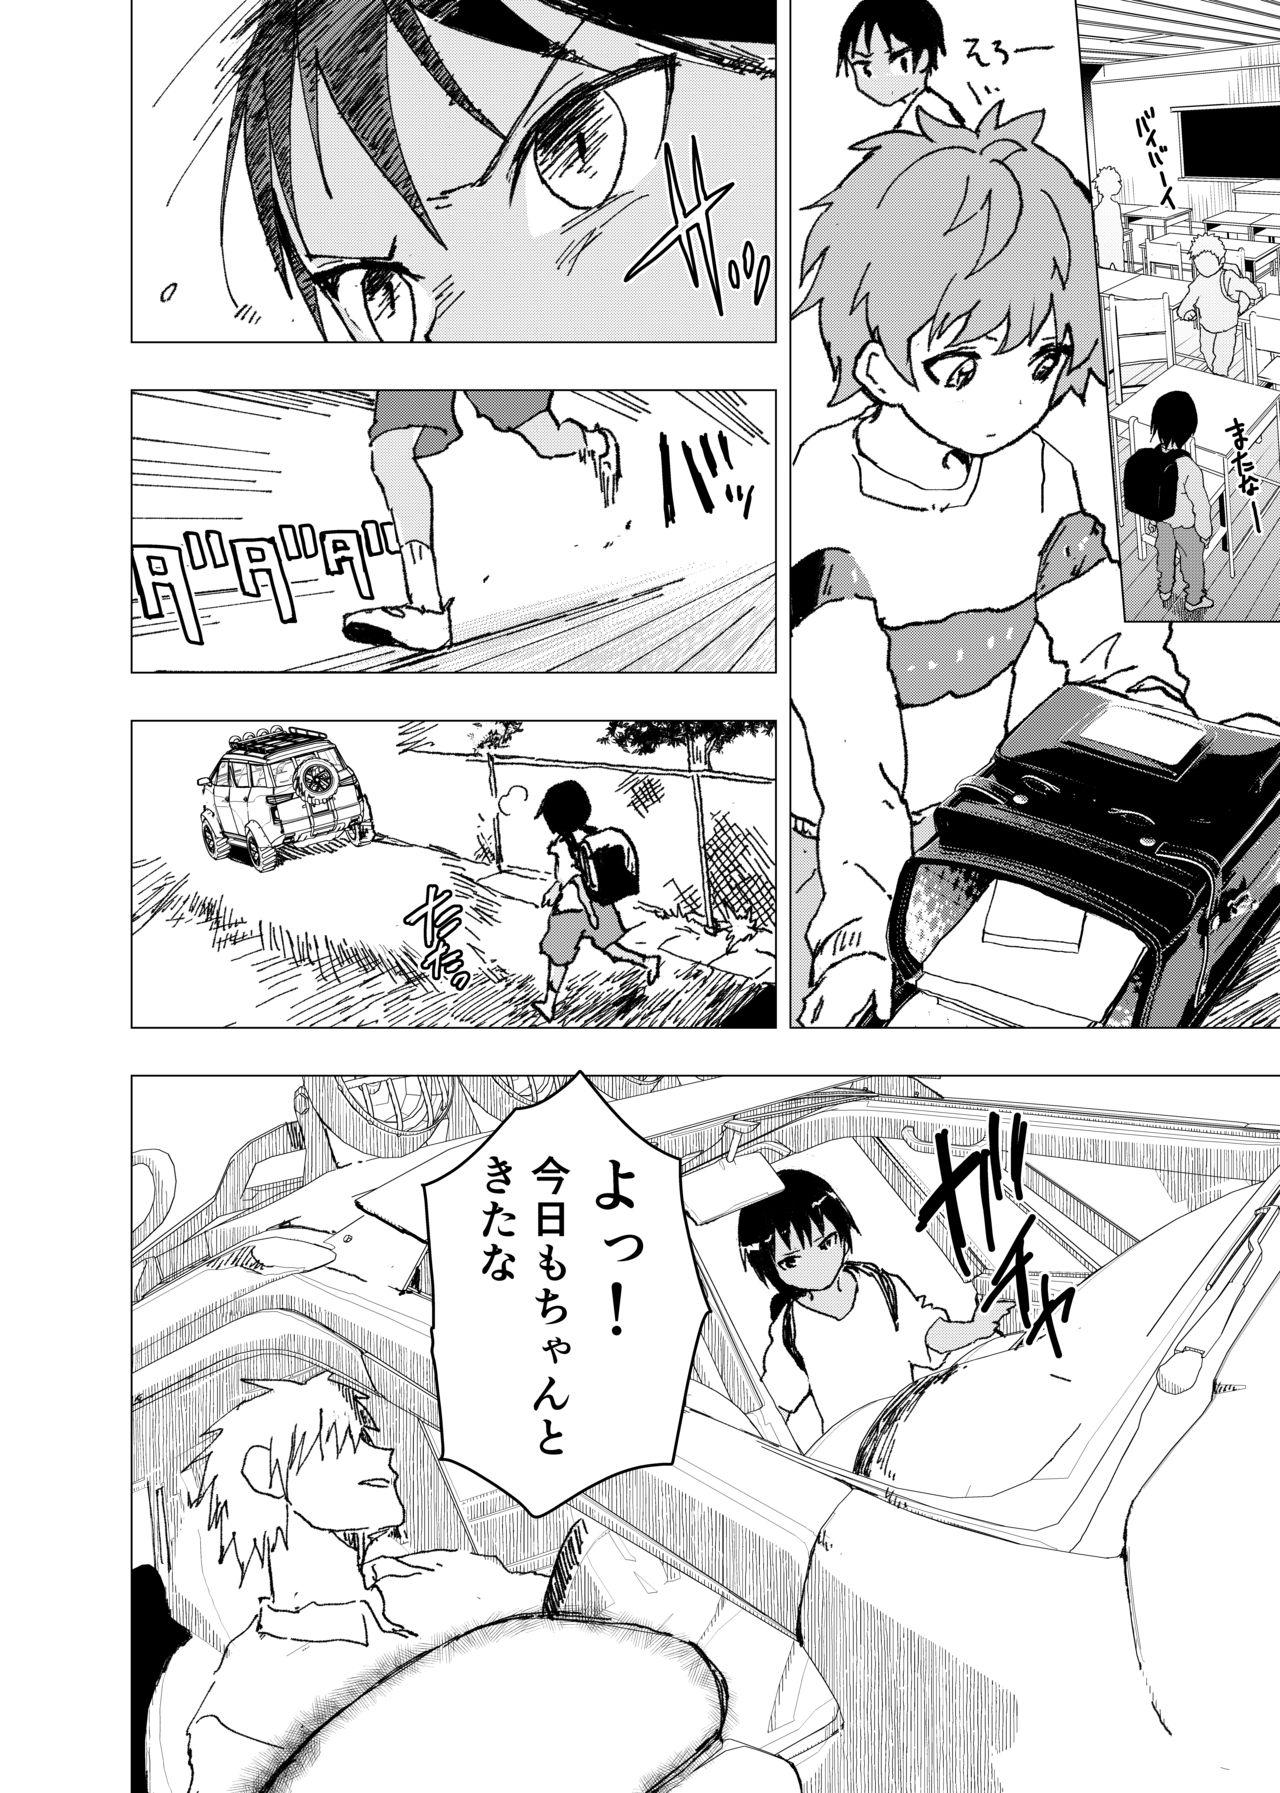 Slutty Inaka no Uke Shounen to Tokai no Seme Shounen no Ero Manga - Original Argentino - Page 4